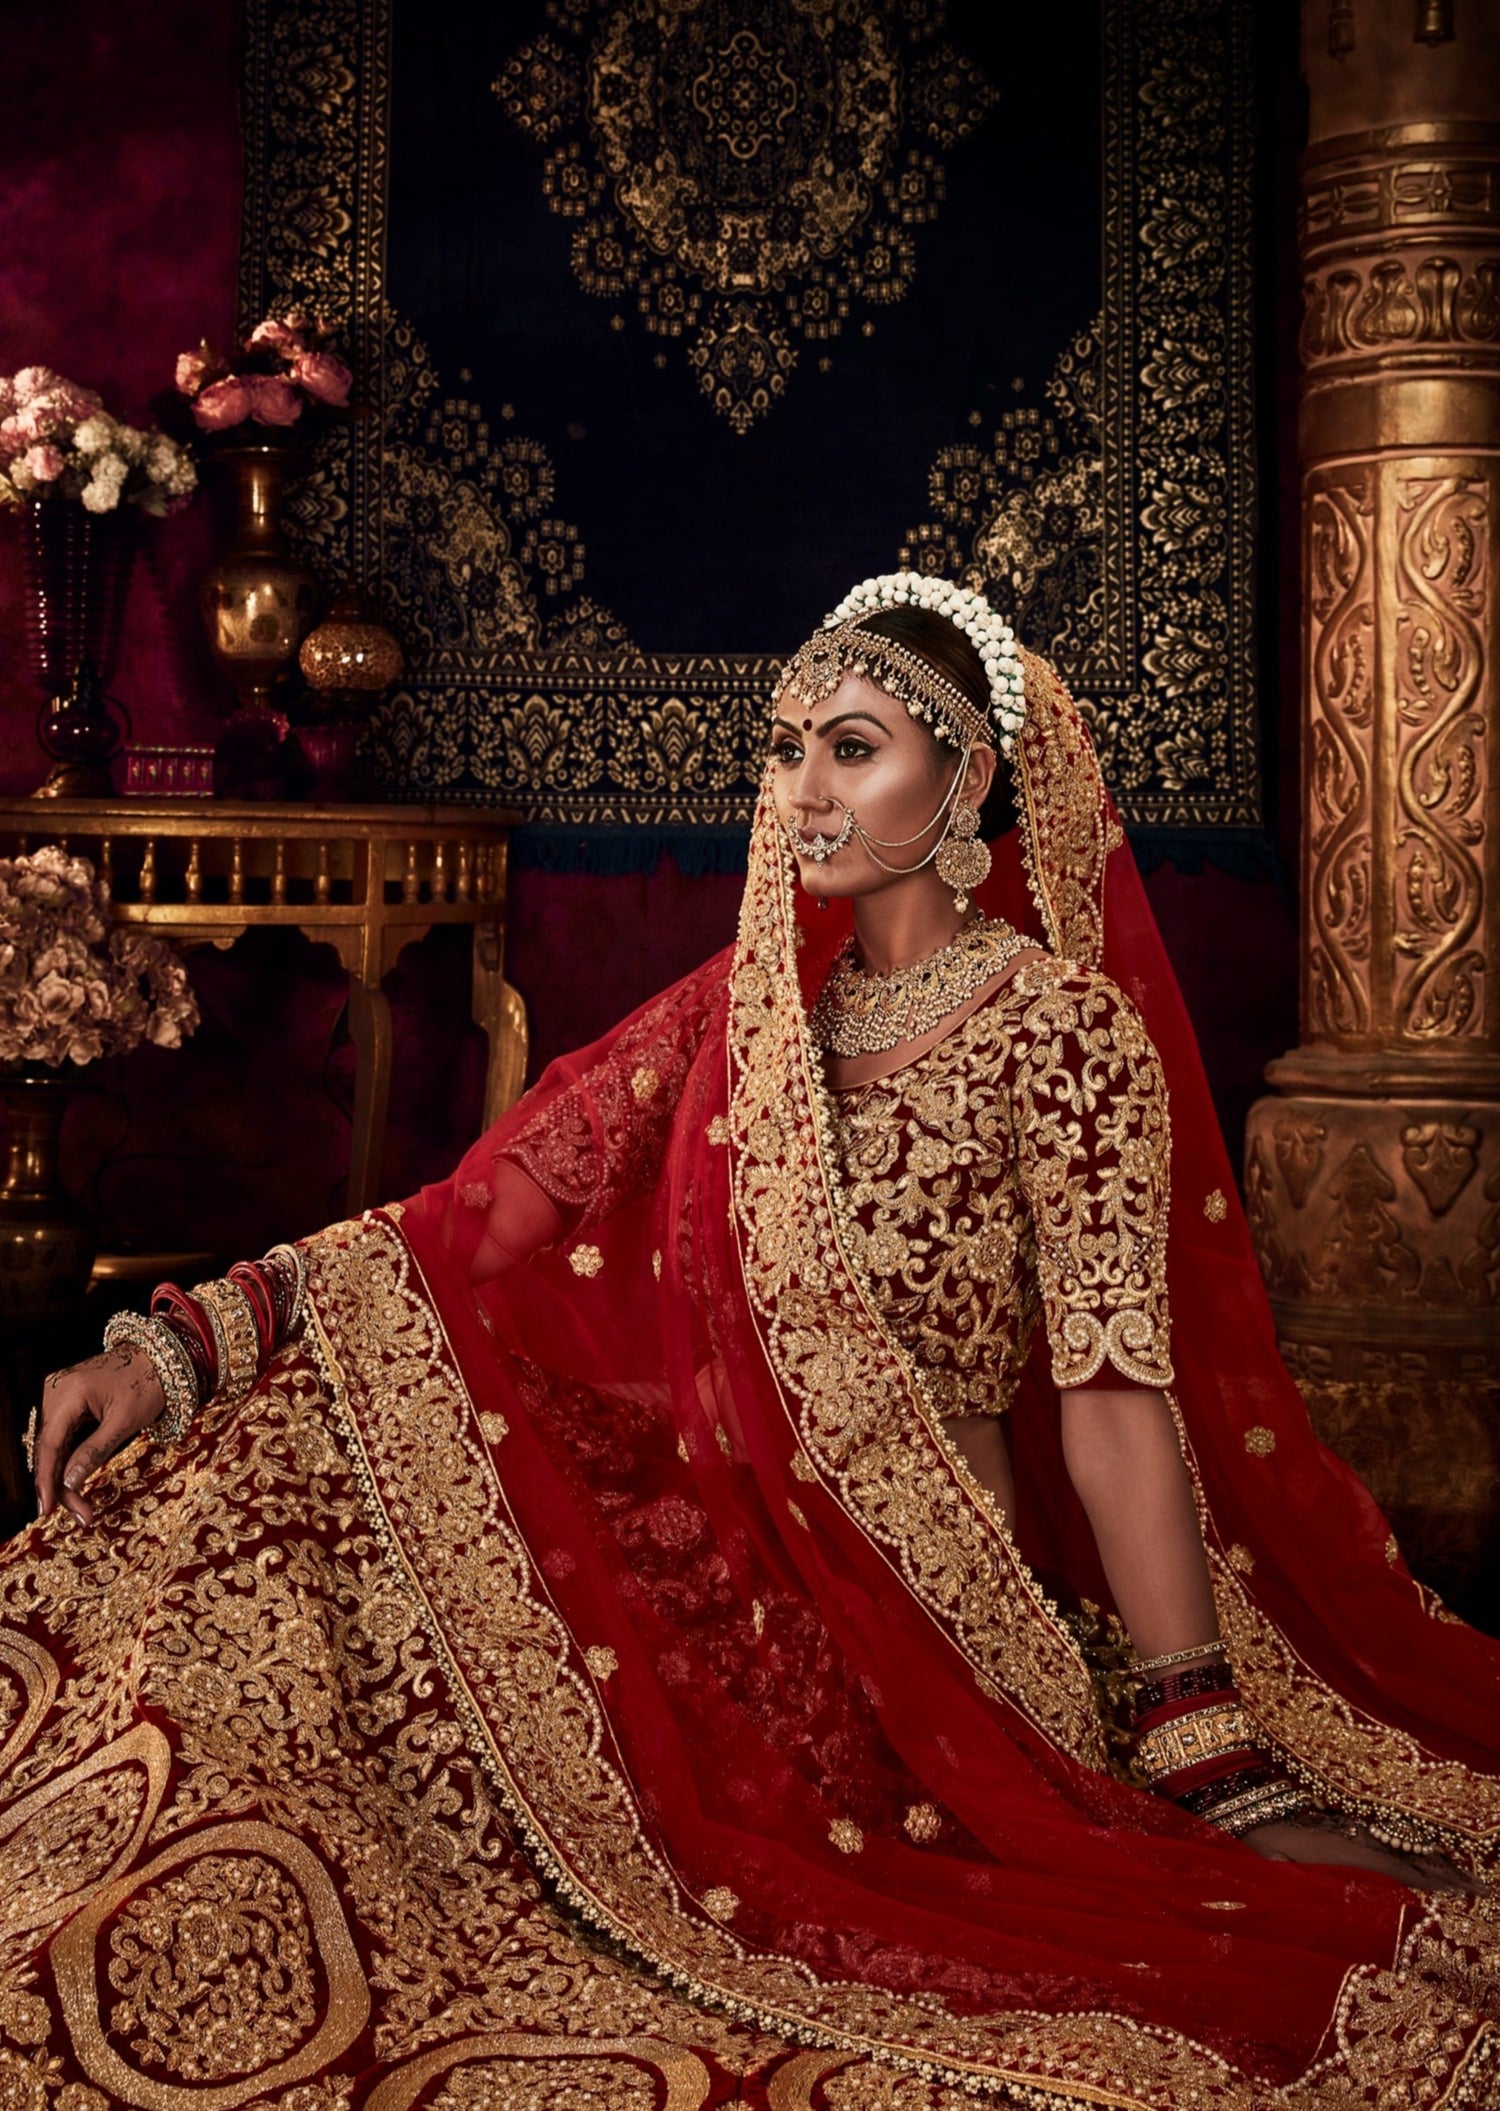 Buy Sabyasachi Inspired Bridal Lehenga Bridal Ceremony Engagement Reception  Sangeet Mehendi Ceremony Lehenga Choli Set Online in India - Etsy